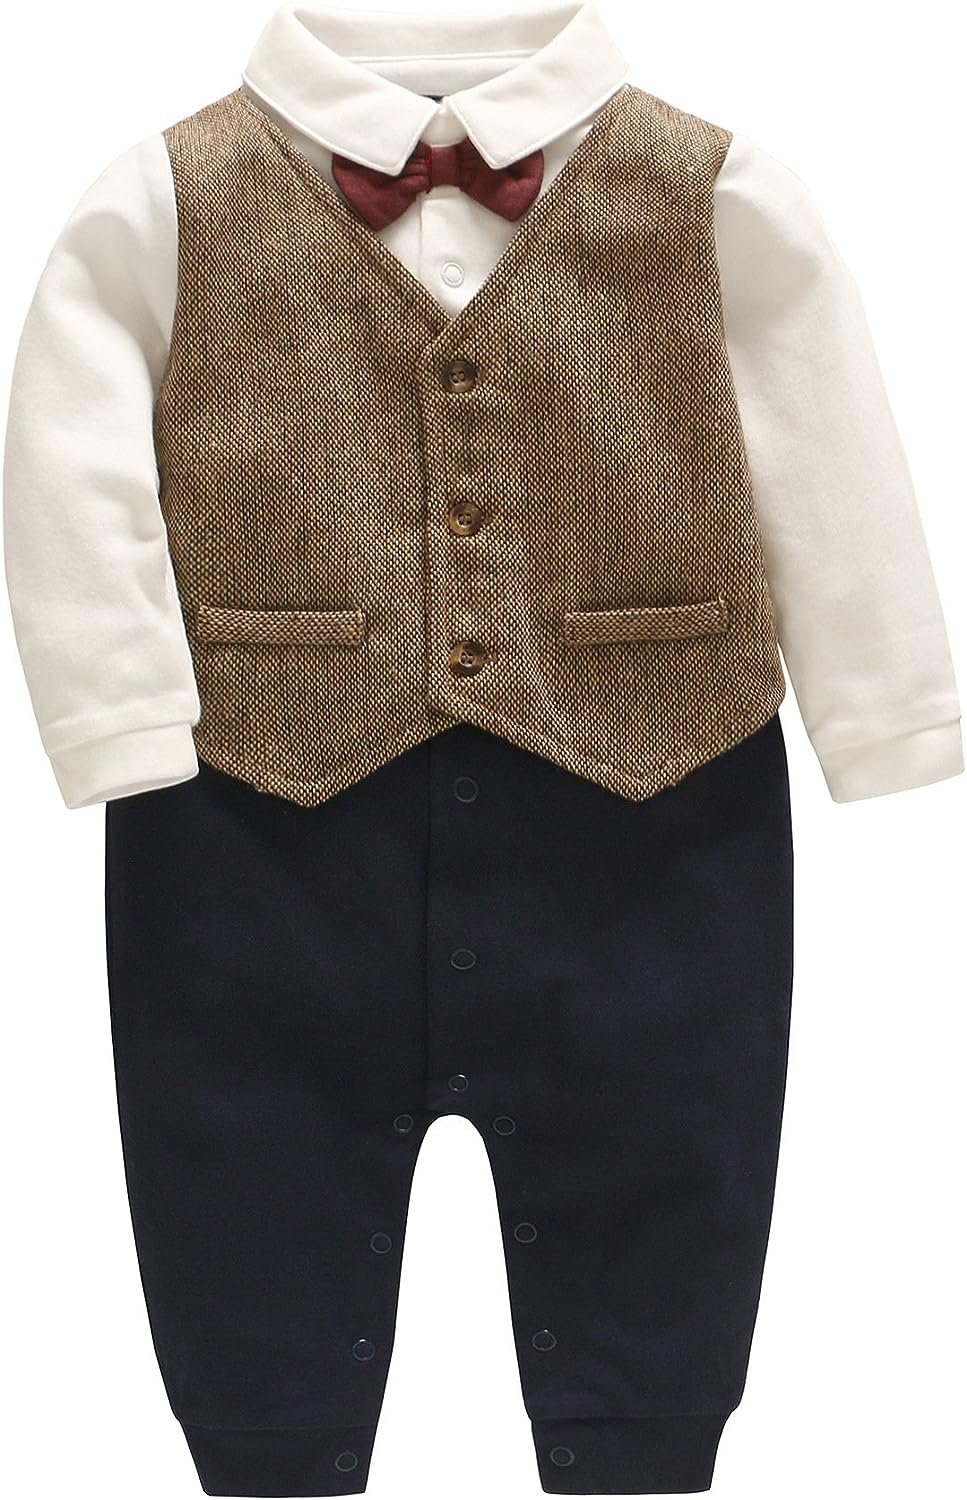 Feidoog Newborn Gentleman One Piece Long Sleeve Baby Boys Gentleman Formal Tuxedo Outfit Suit